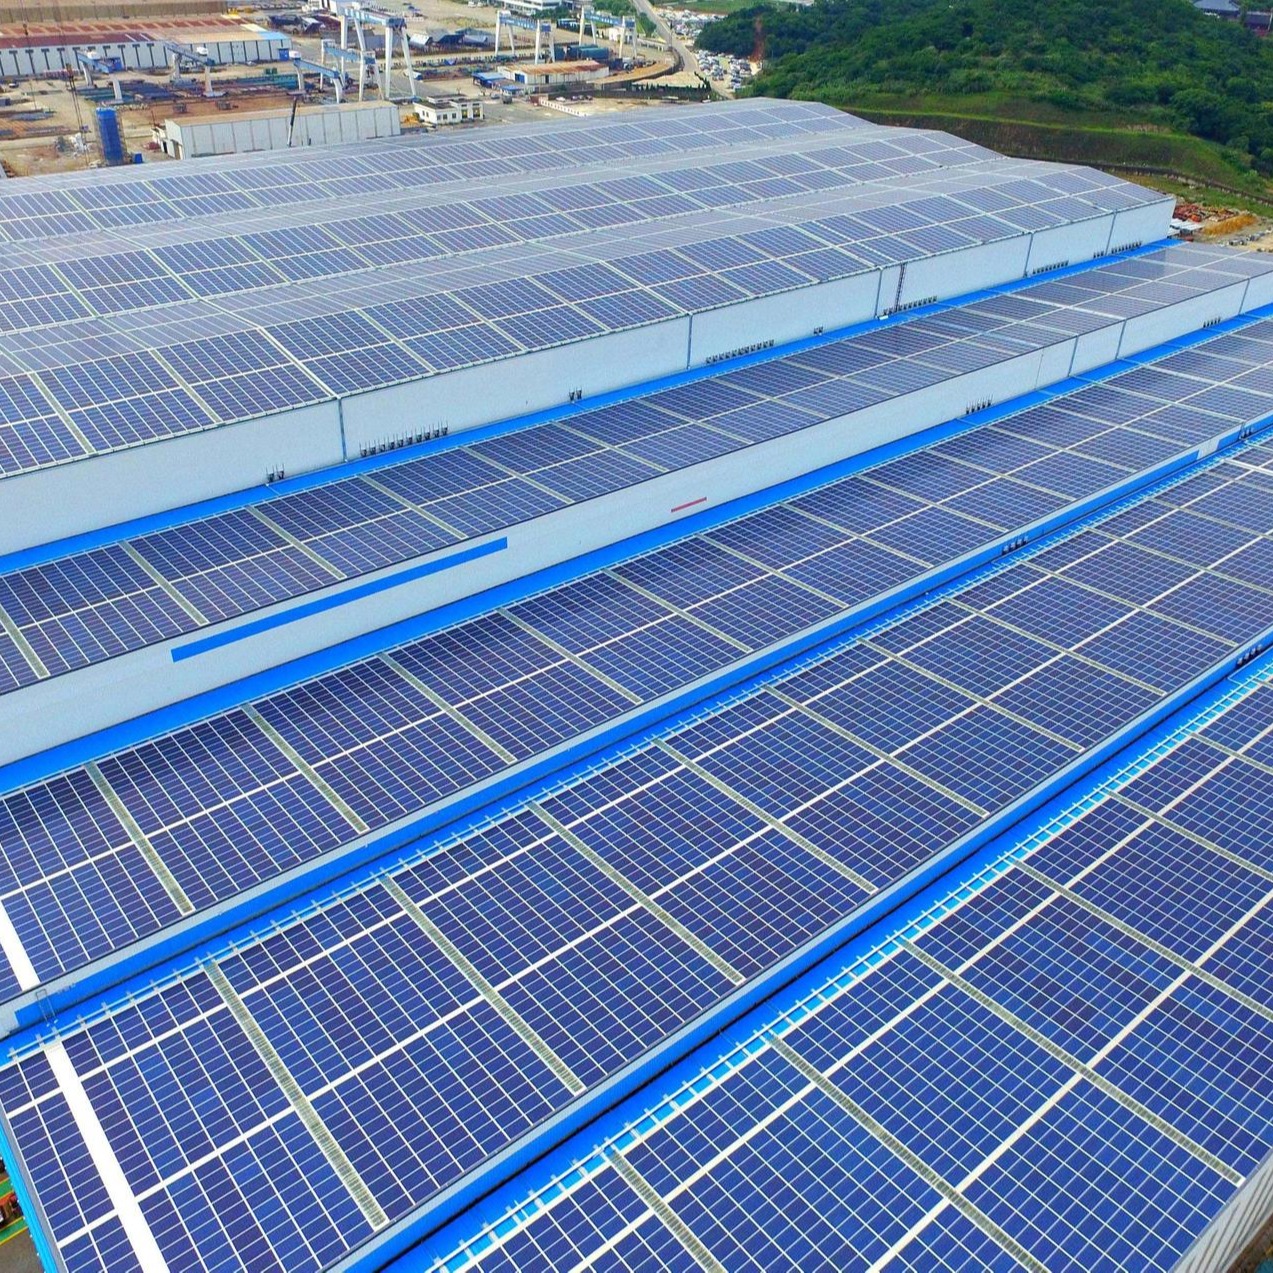 光伏发电 工商业屋顶 太阳能发电系统 多种应用形式 节省大量电费 沈阳光伏发电